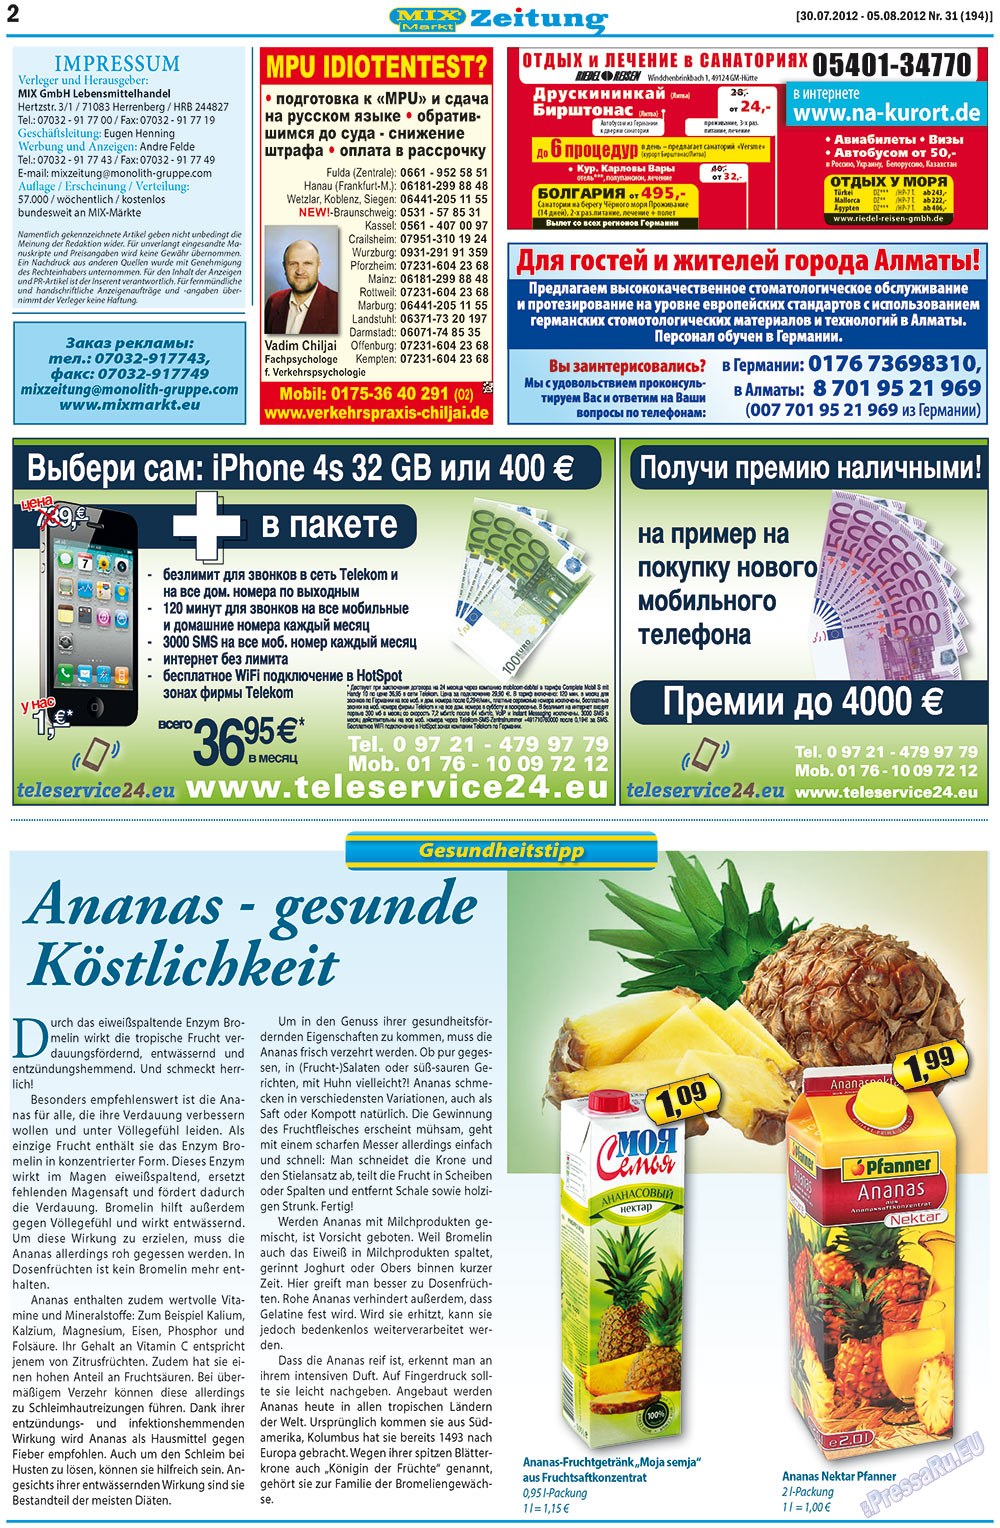 MIX-Markt Zeitung (газета). 2012 год, номер 31, стр. 2